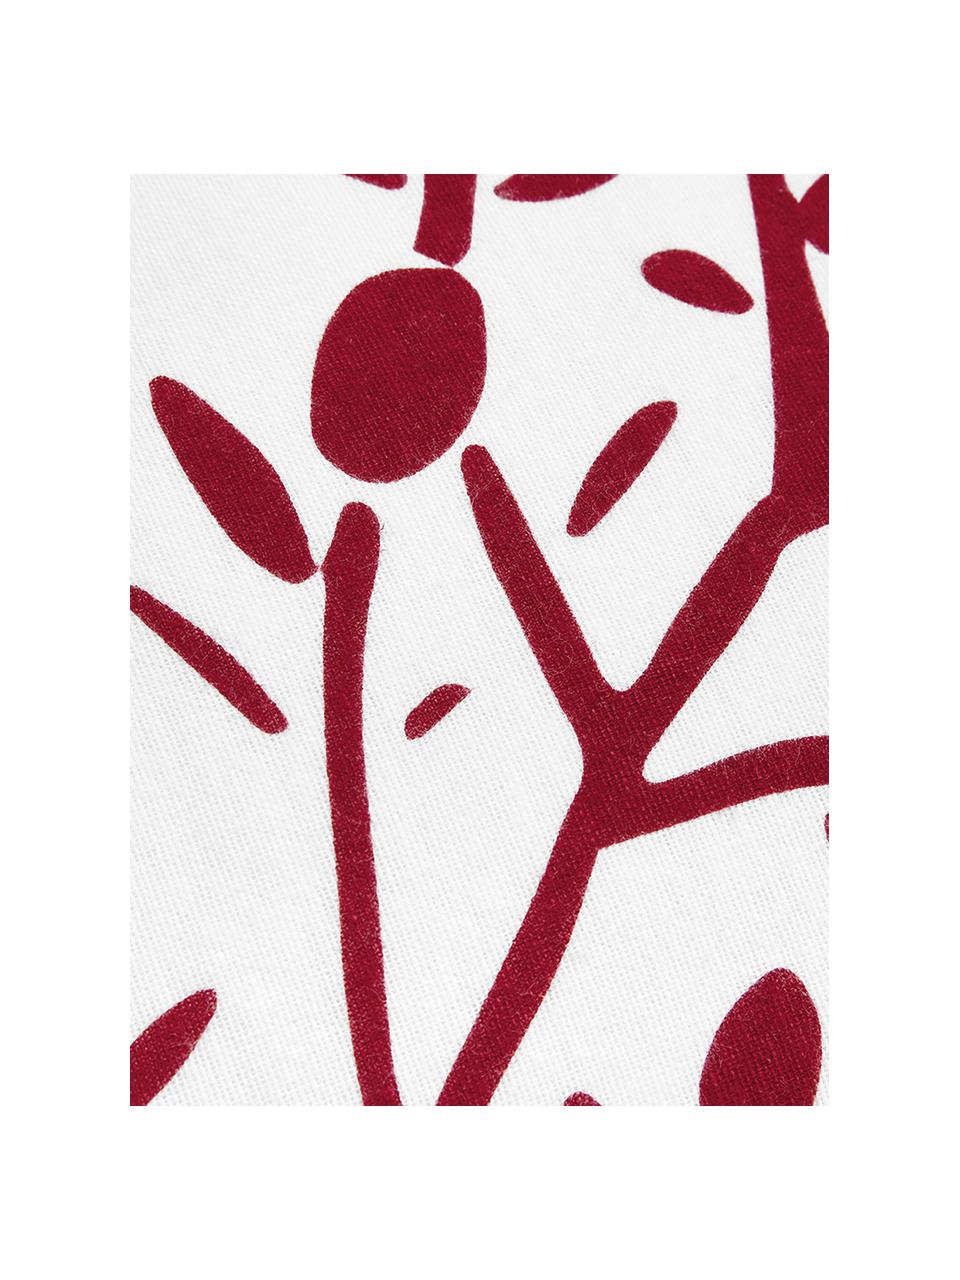 Flanell-Bettwäsche Mistletoe, Webart: Flanell Flanell ist ein k, Weiß, Rot, 240 x 220 cm + 2 Kissen 80 x 80 cm